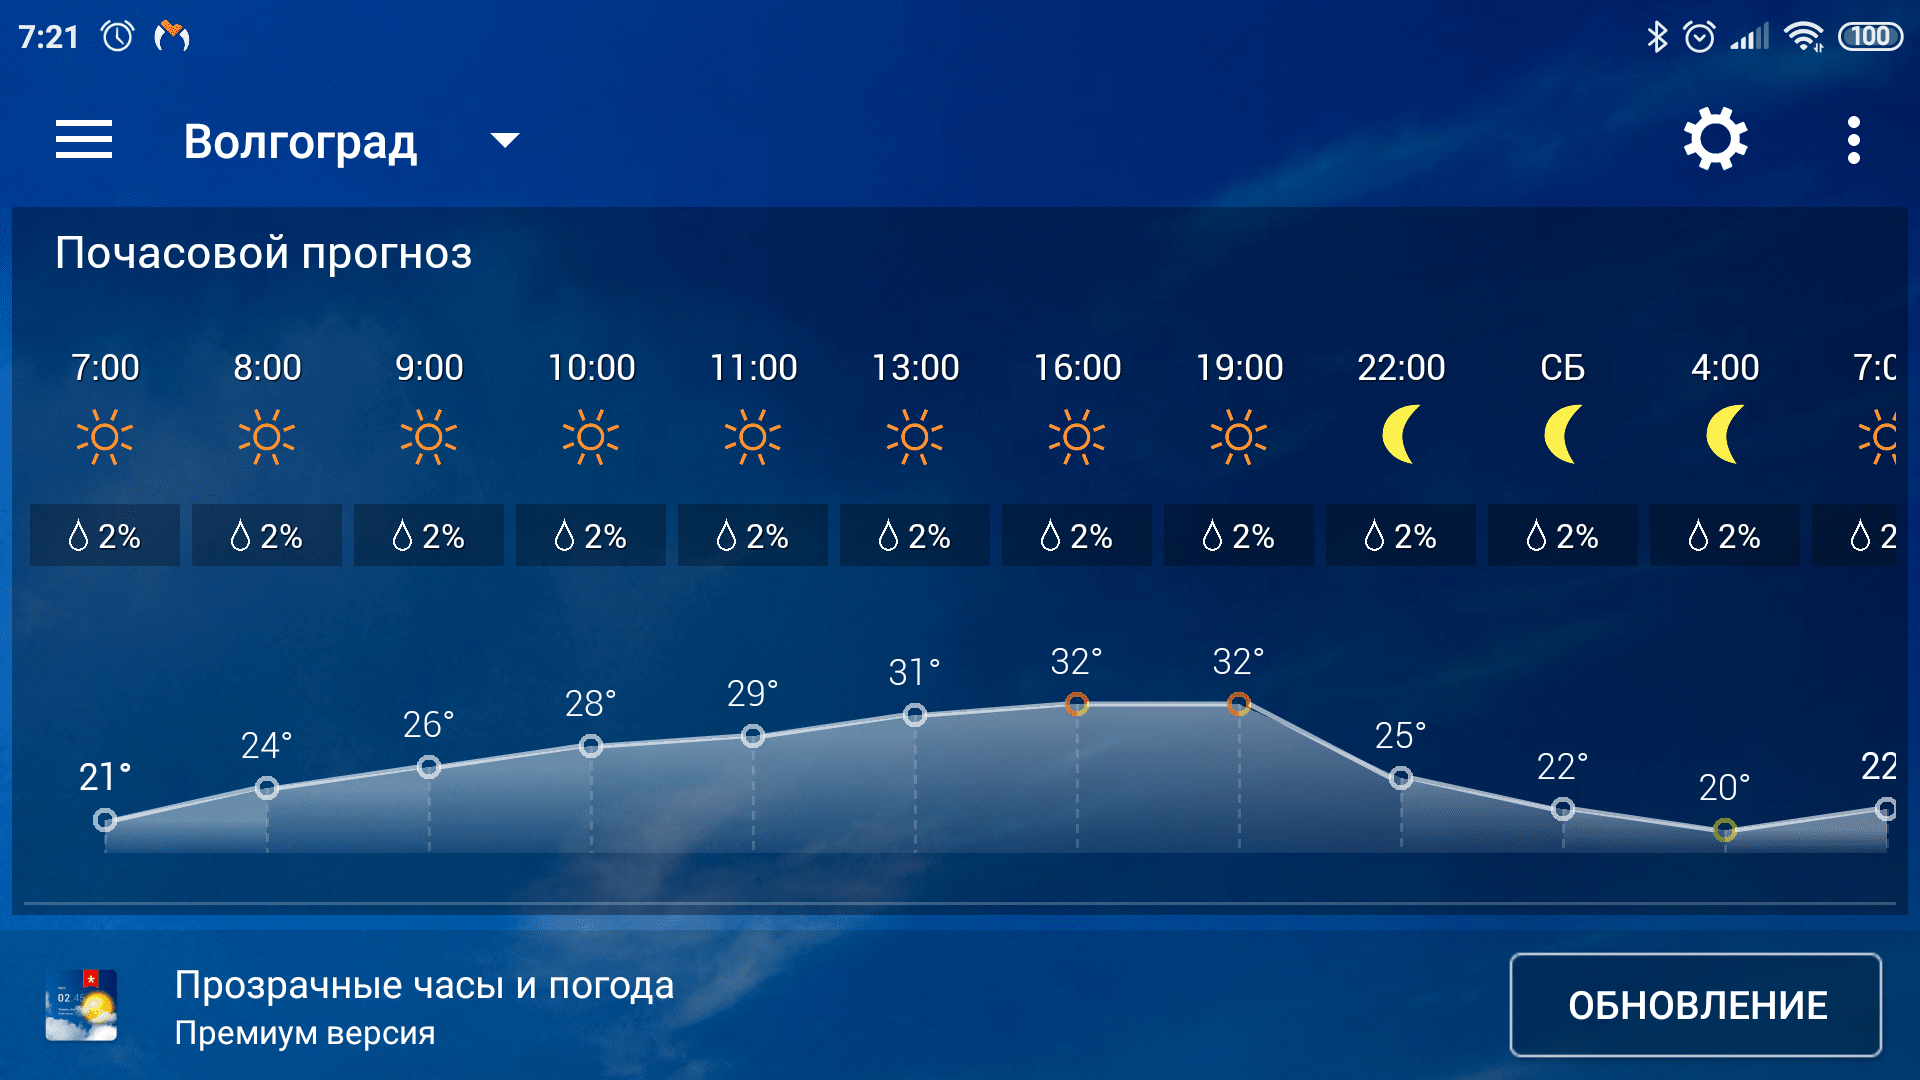 Саратов погода сегодня и завтра по часам. Погода. Погода в Волгограде. Прогноз погоды в Волгограде. Погода в Волгограде на завтра.